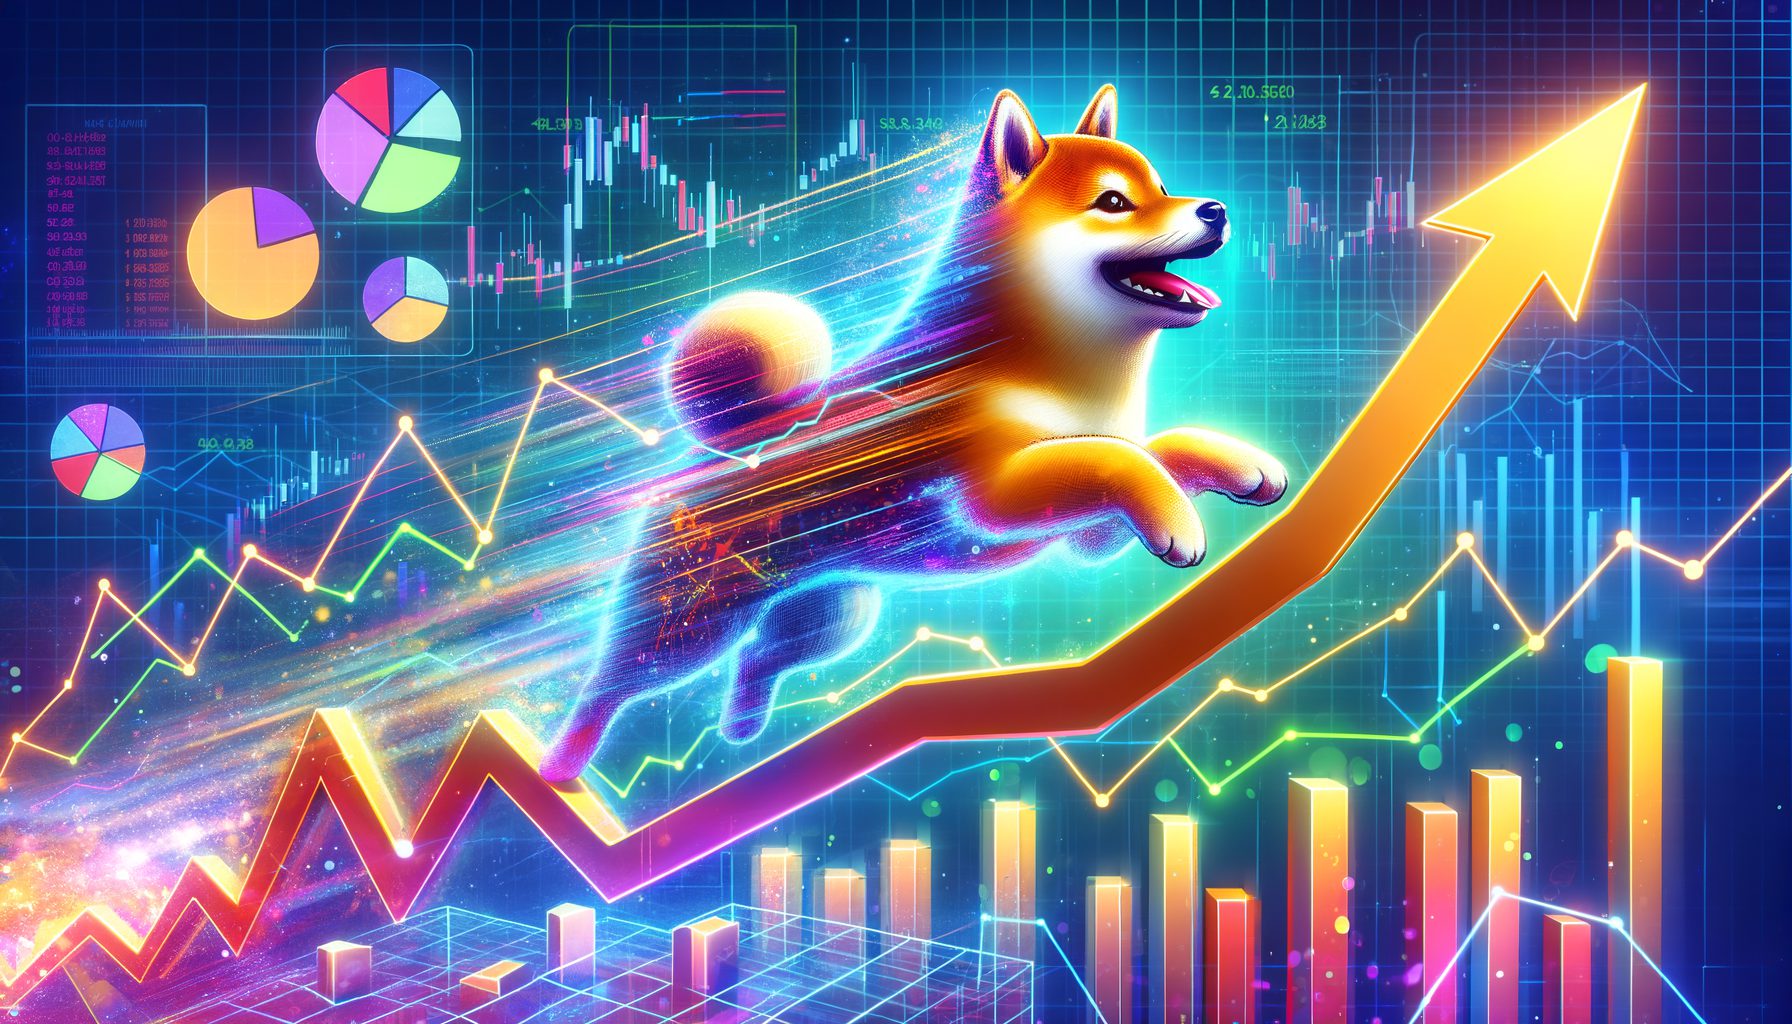 پیش بینی قیمت آخر هفته Dogecoin با نزدیک شدن به نصف شدن بیت کوین